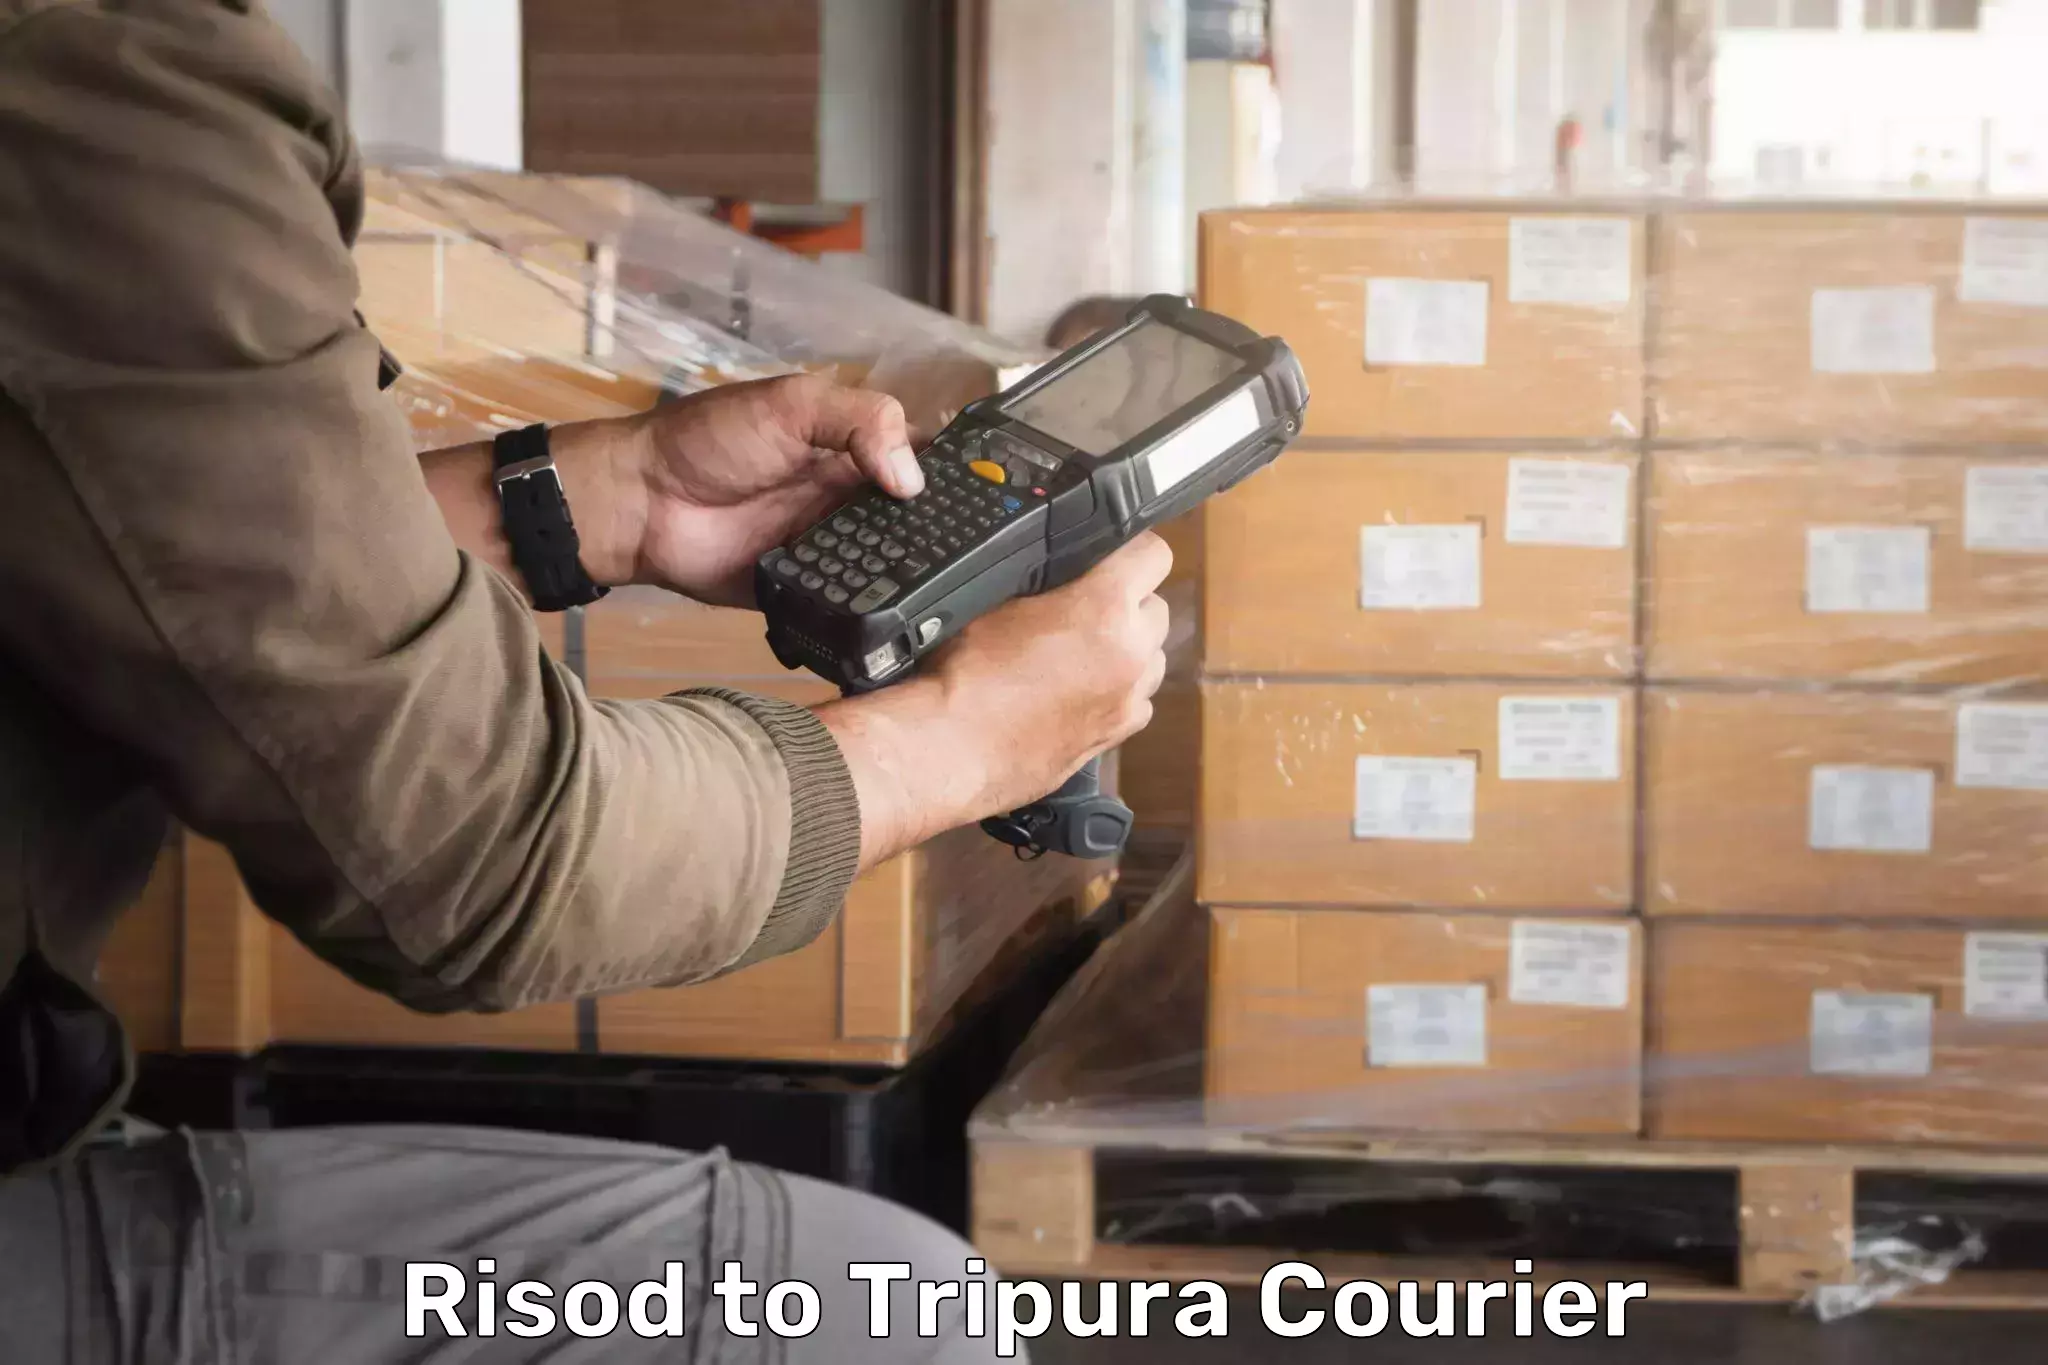 Remote area delivery Risod to Tripura